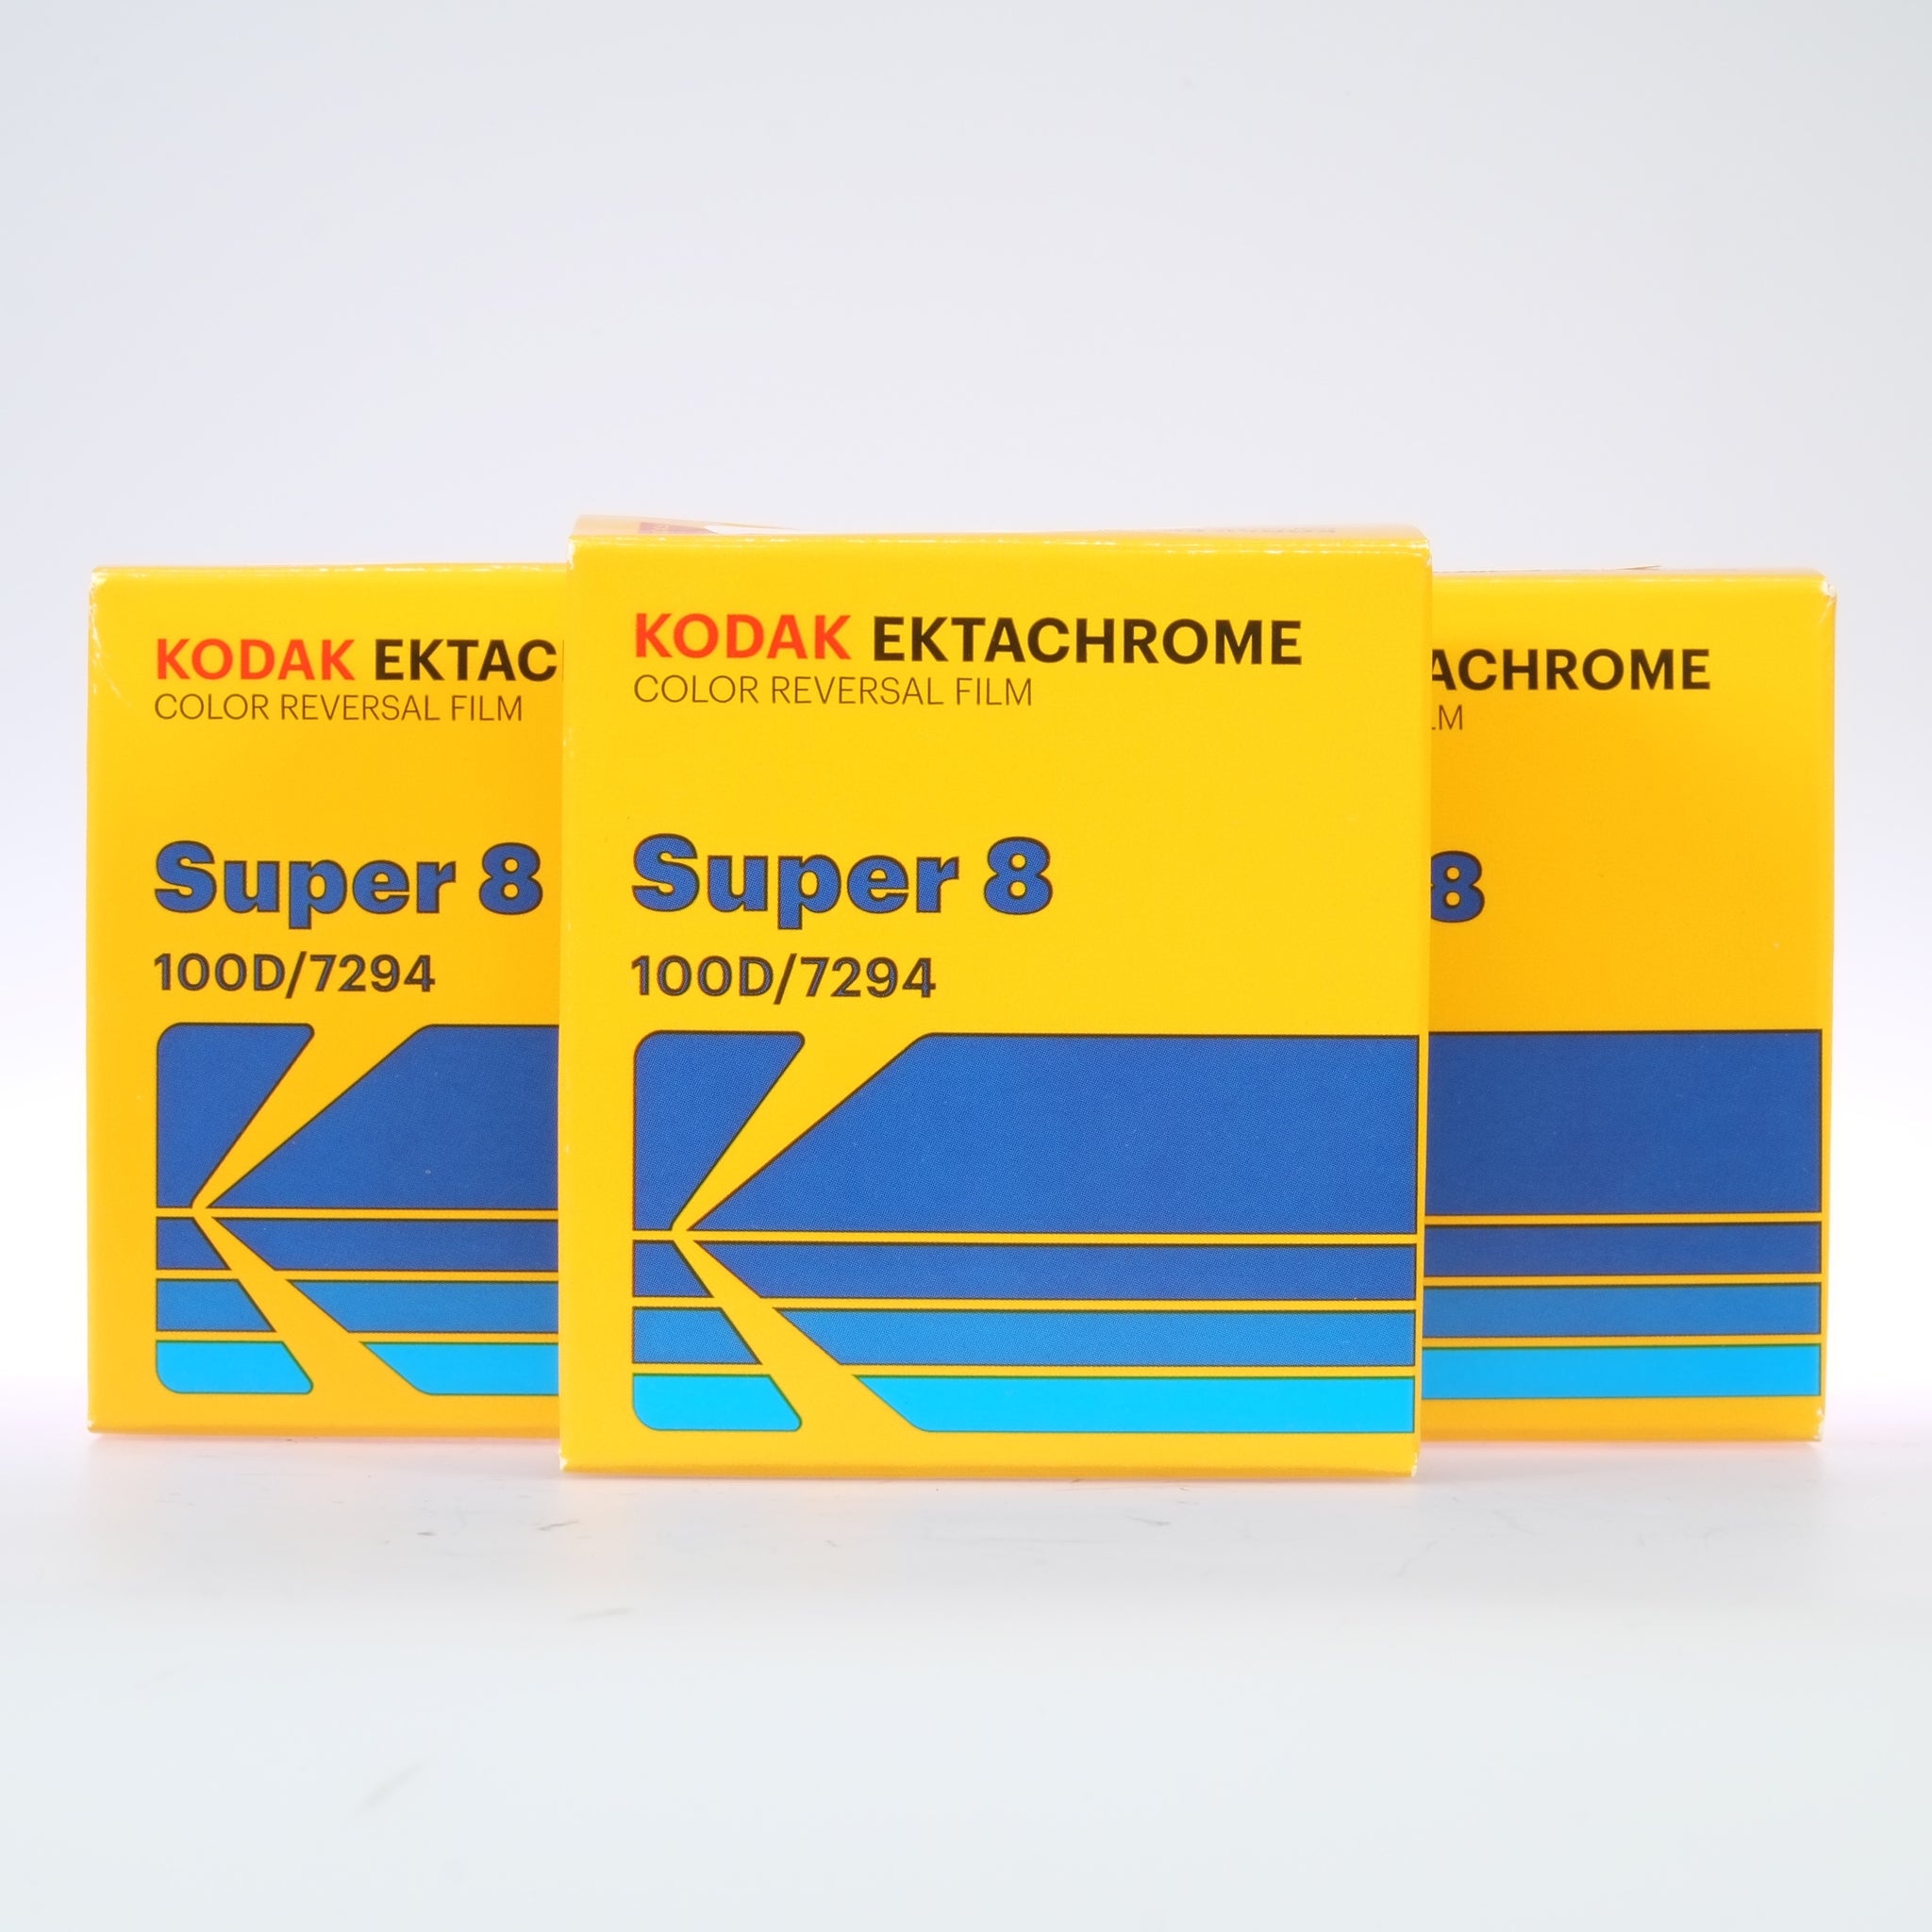 Kodak Ektachrome 100D mit 10 Kameras getestet